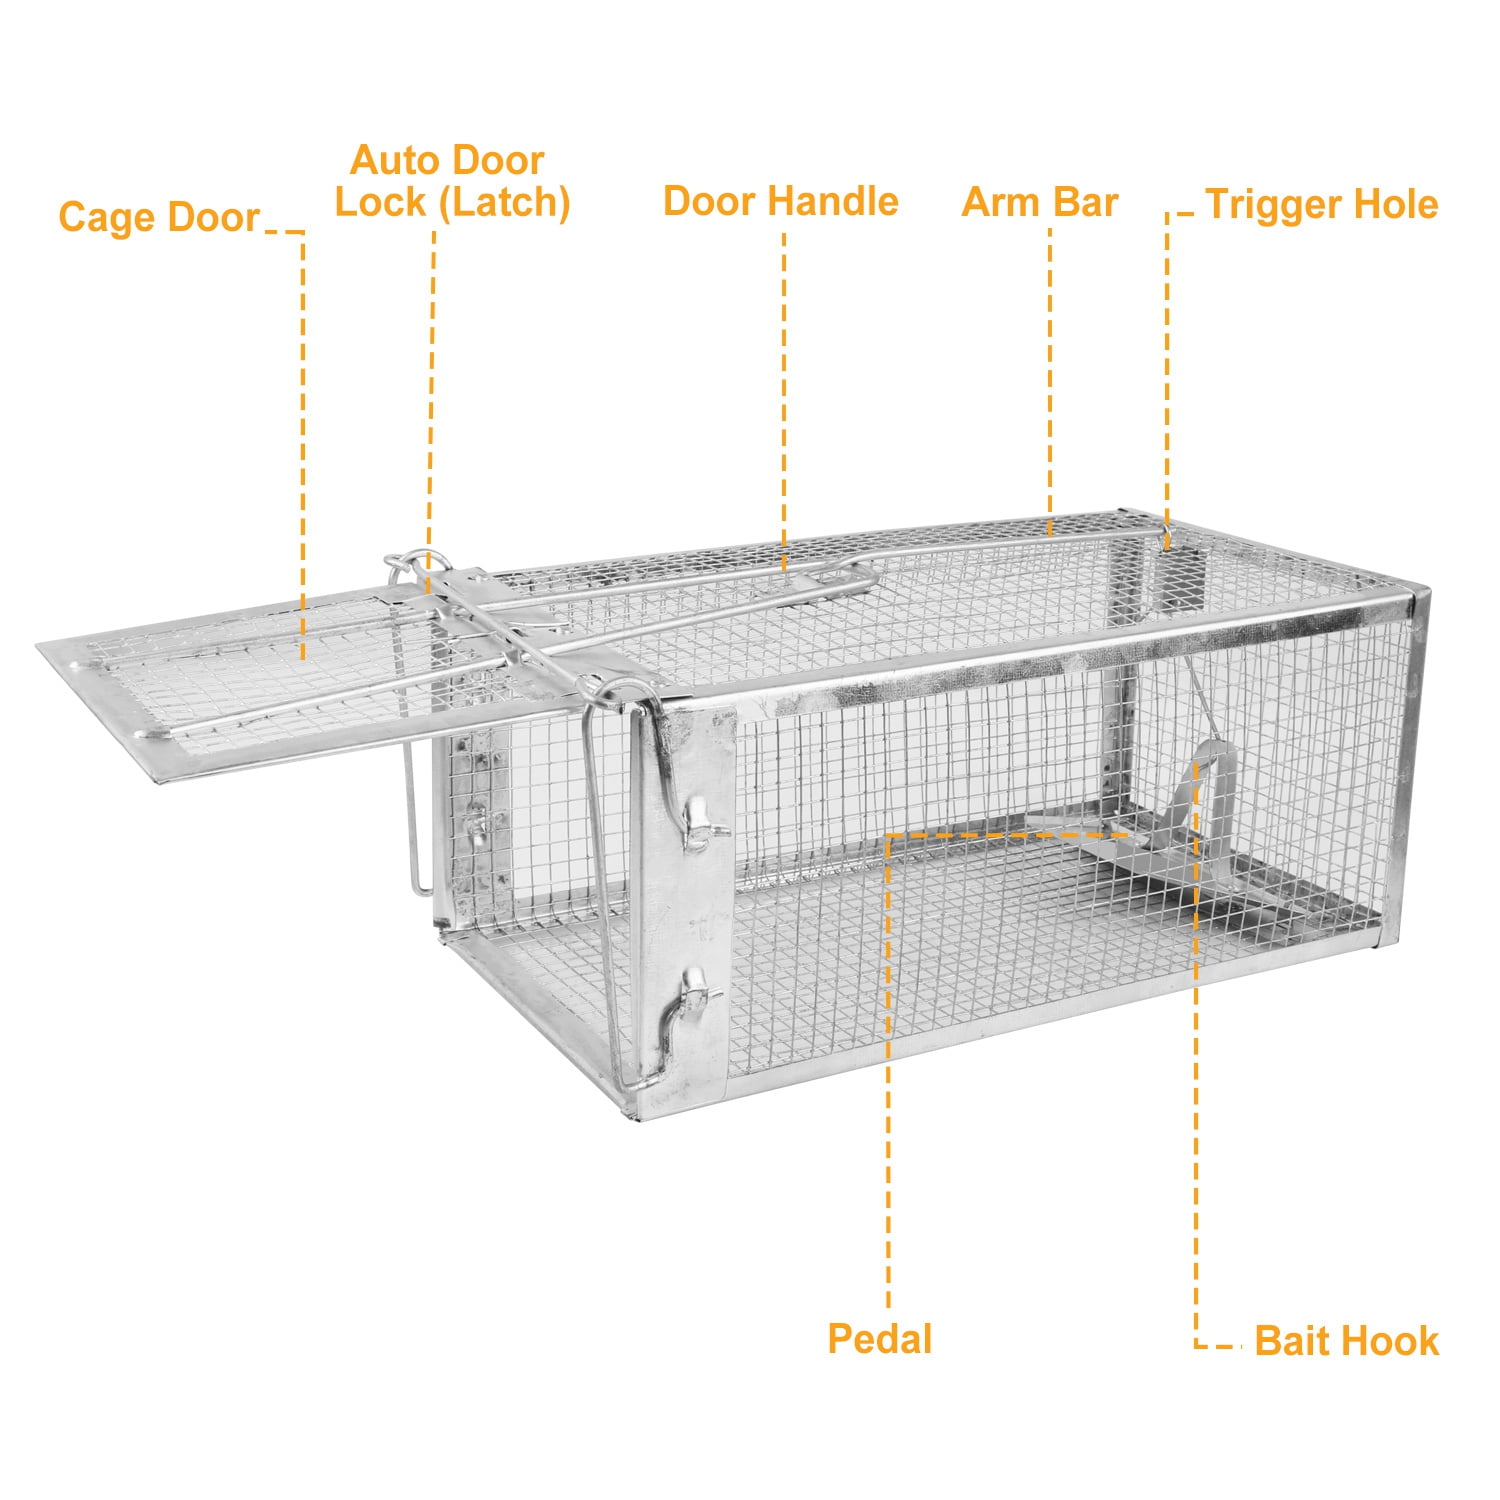 Hedgehog behind bars – inside humane rat trap!